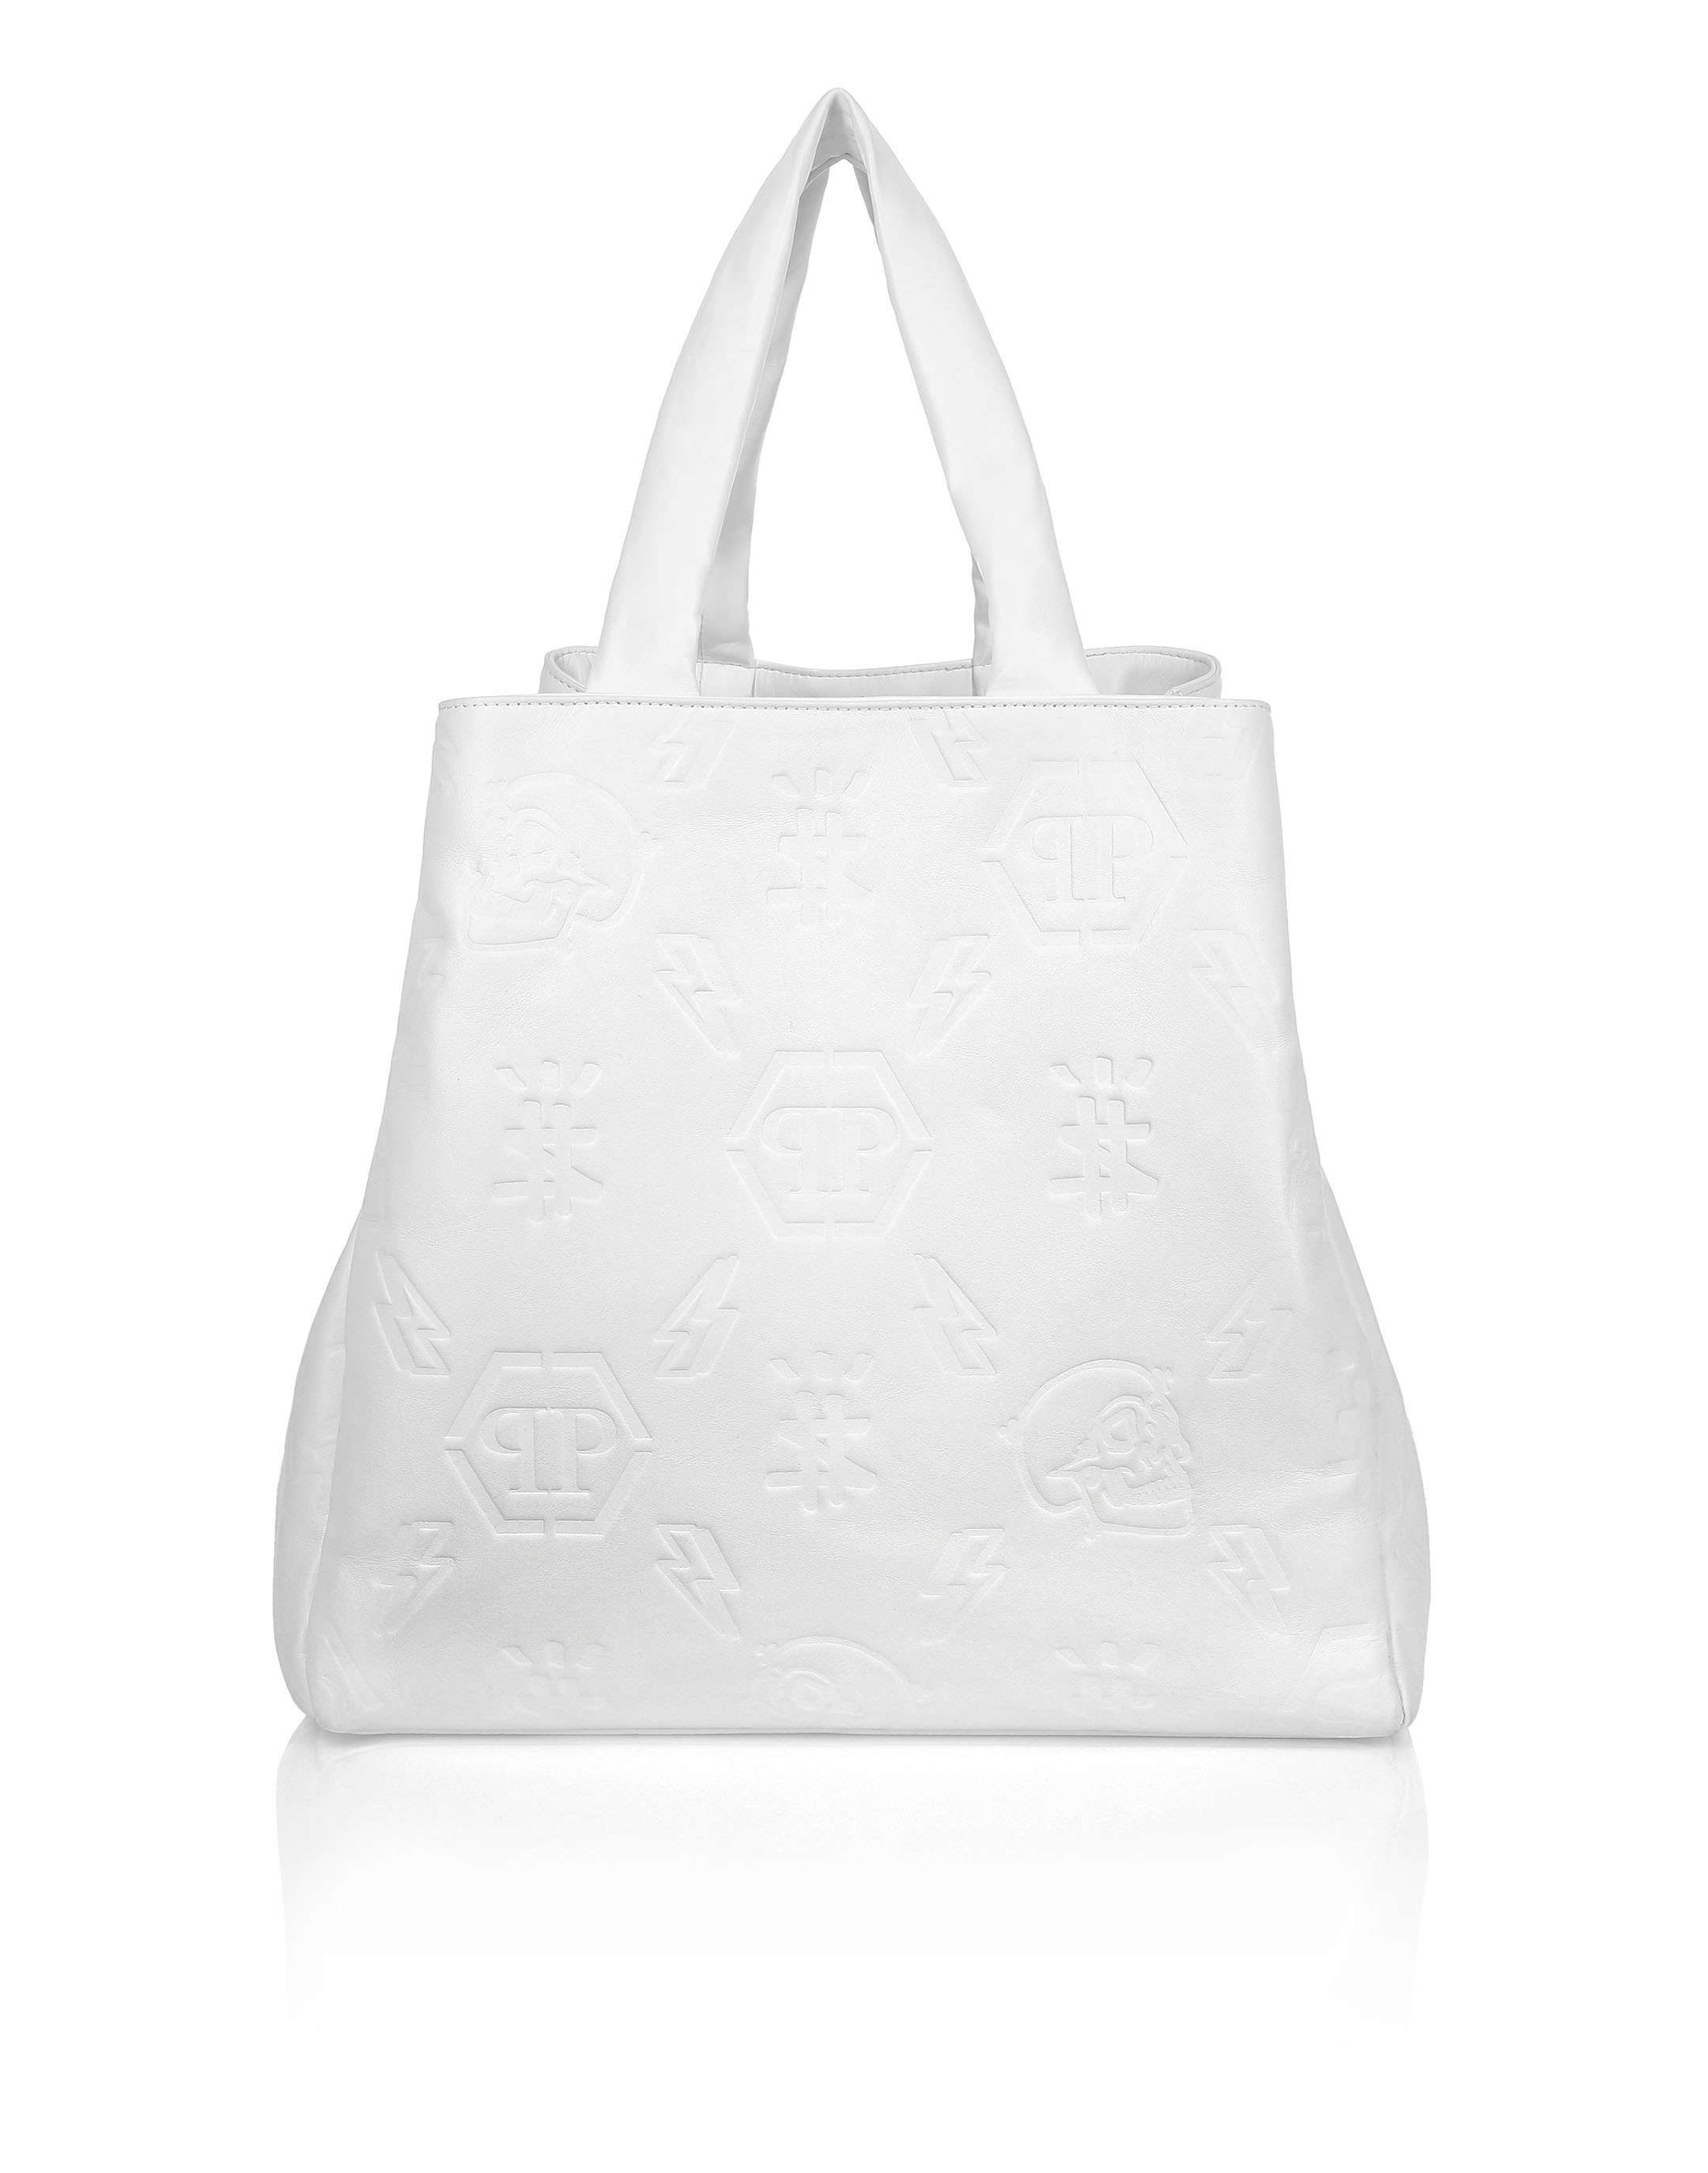 Lv White Shoulder Bag Factory Sale, SAVE 45% 